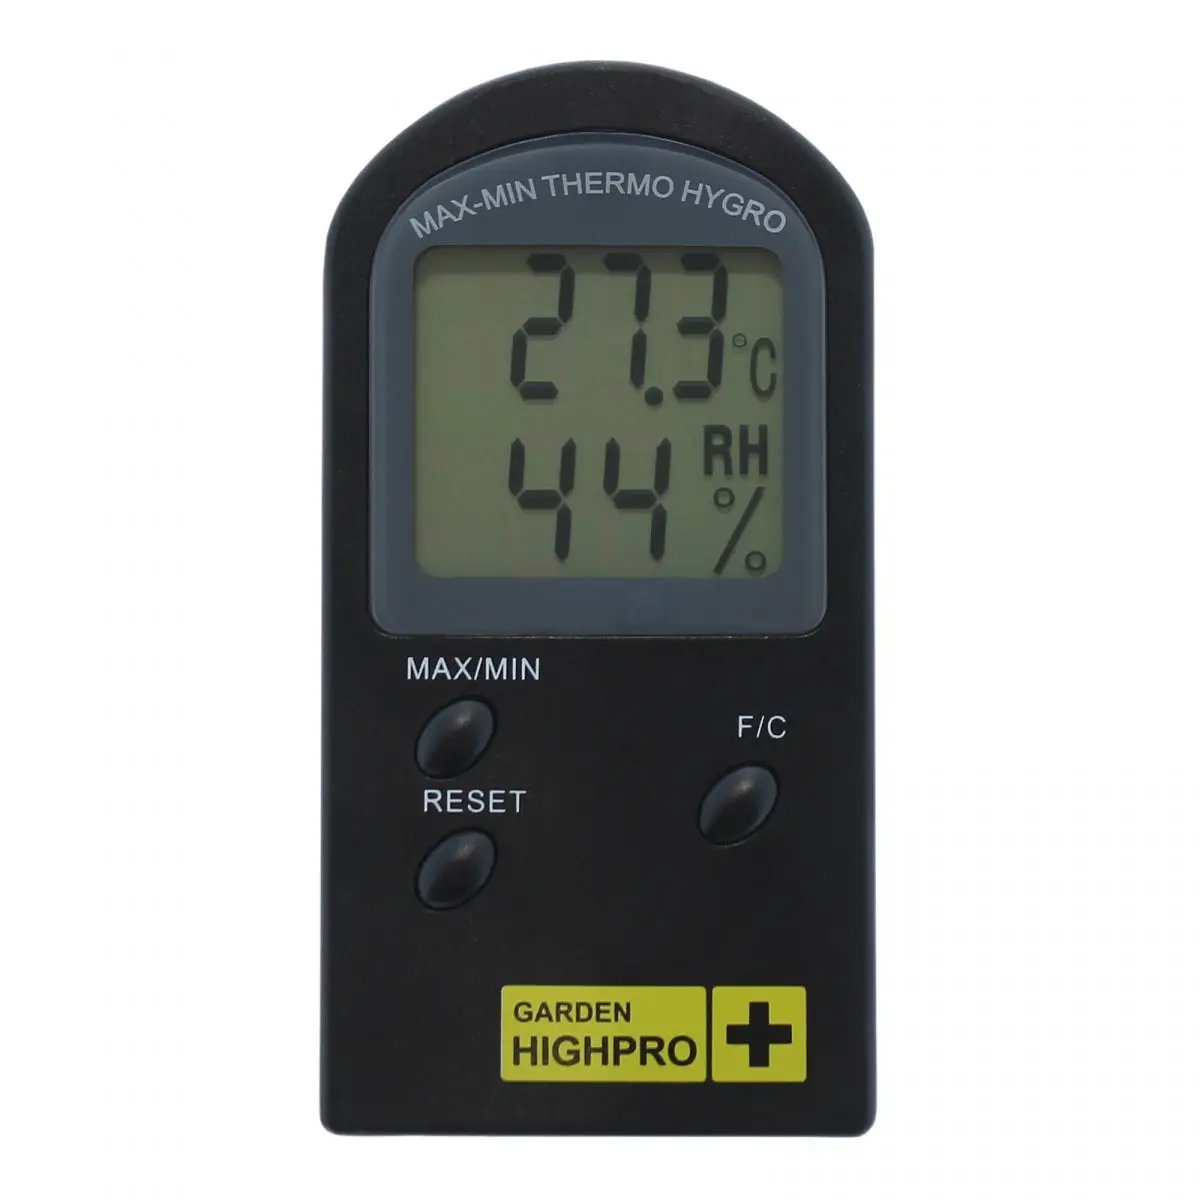 GSE - Contrôleur d'humidité, température et VPD pour 2 ventilateurs - 16A